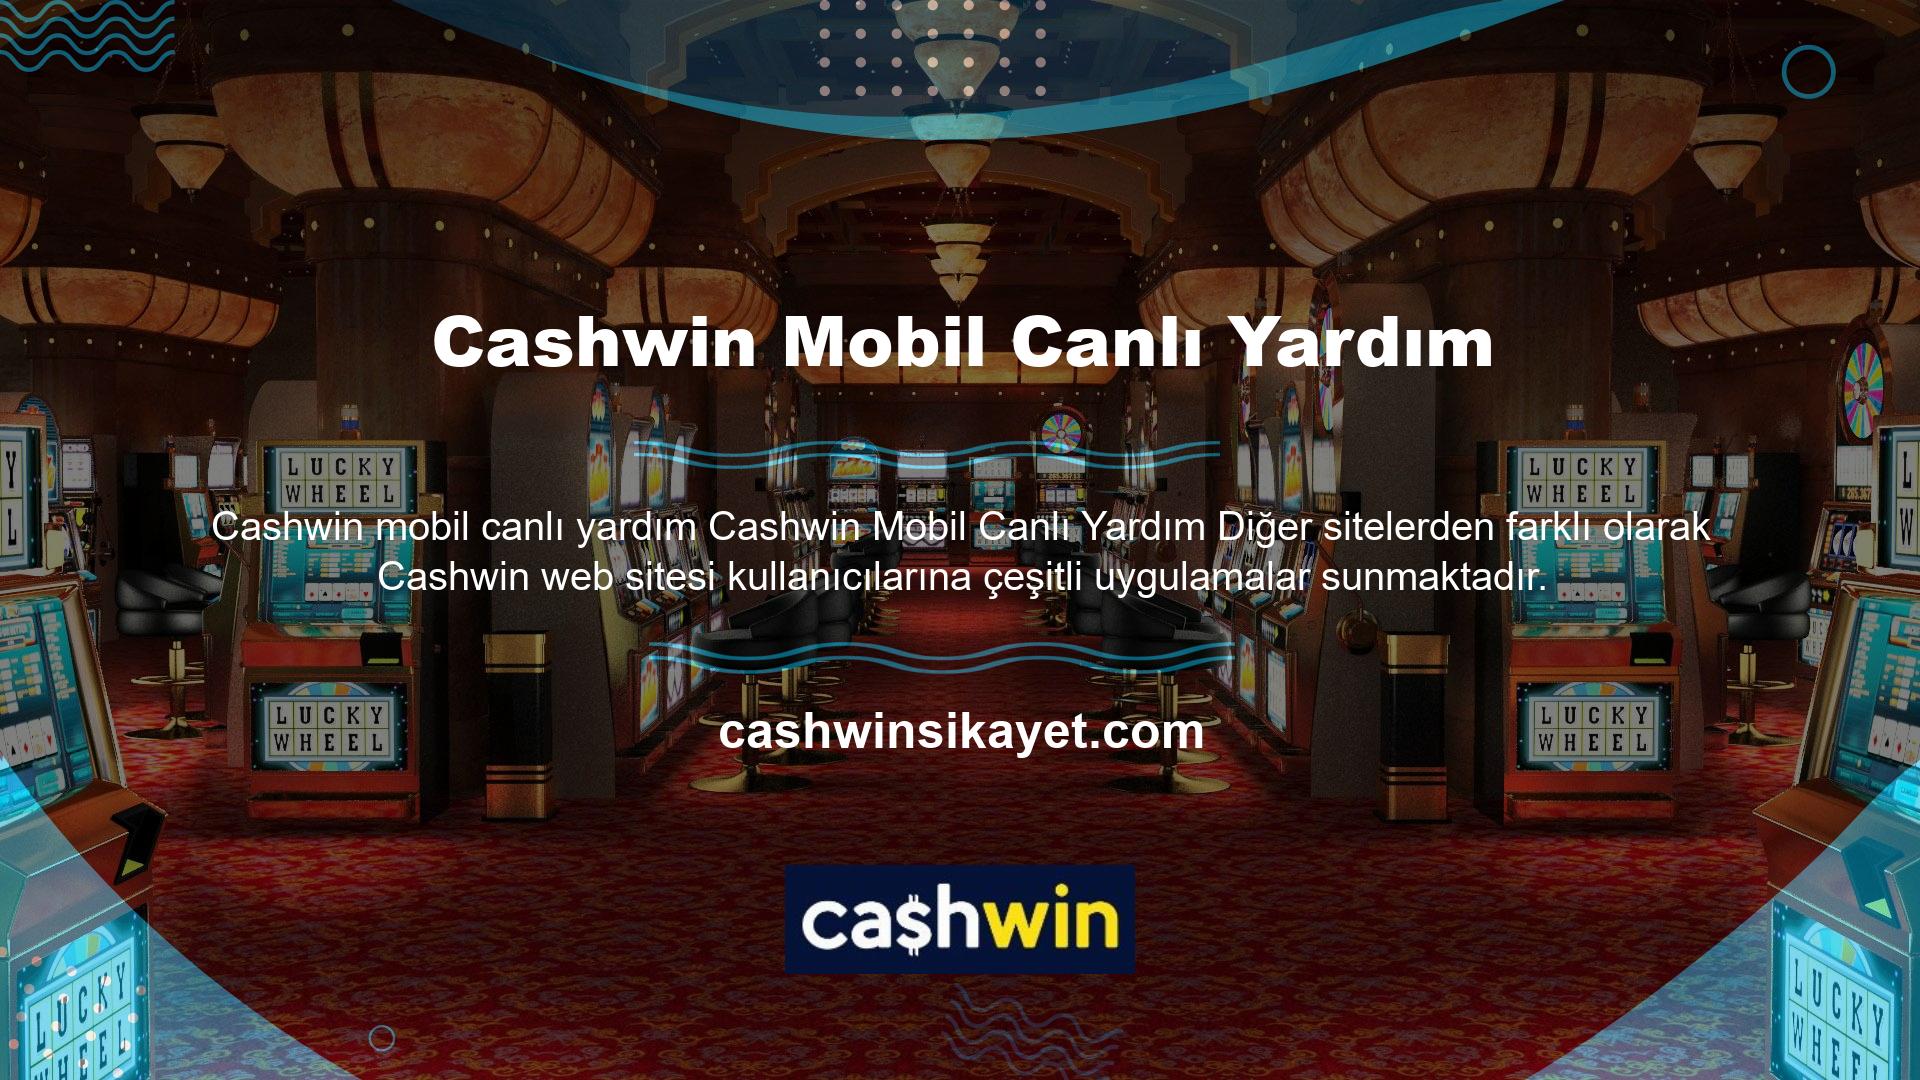 Cashwin müşteri hizmetleri sizi desteklemeye ve mümkün olan en iyi hizmeti sunmaya adanmıştır